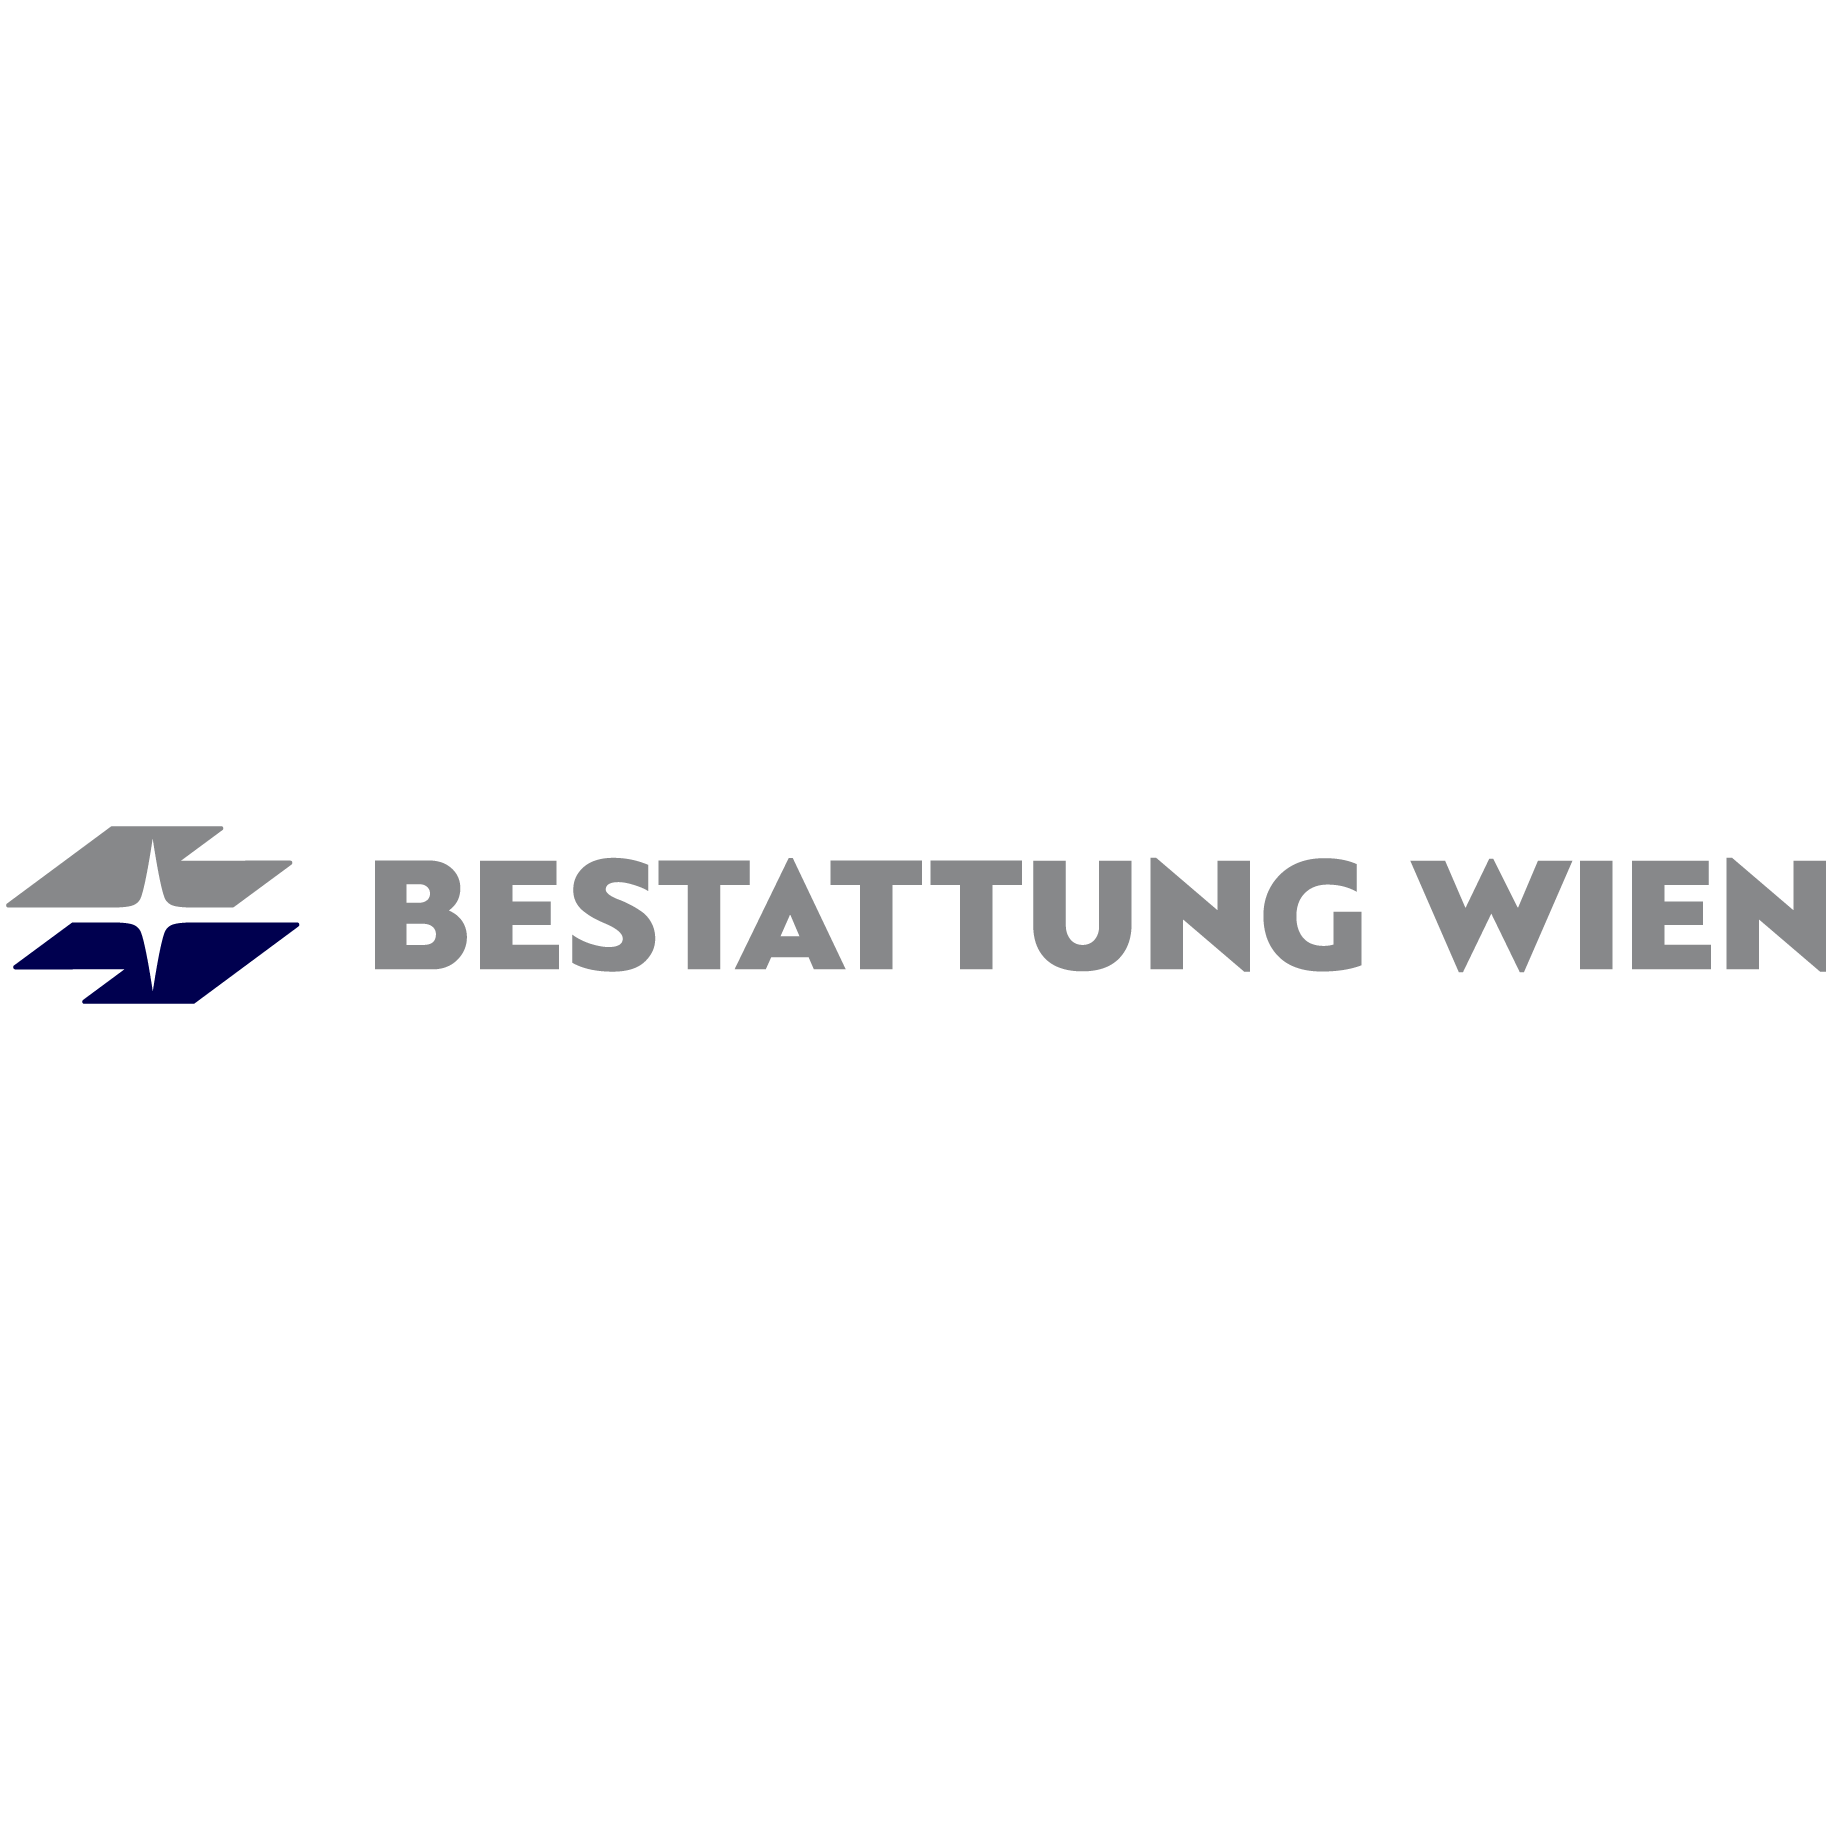 BESTATTUNG WIEN - Kundenservice Landstraße Logo